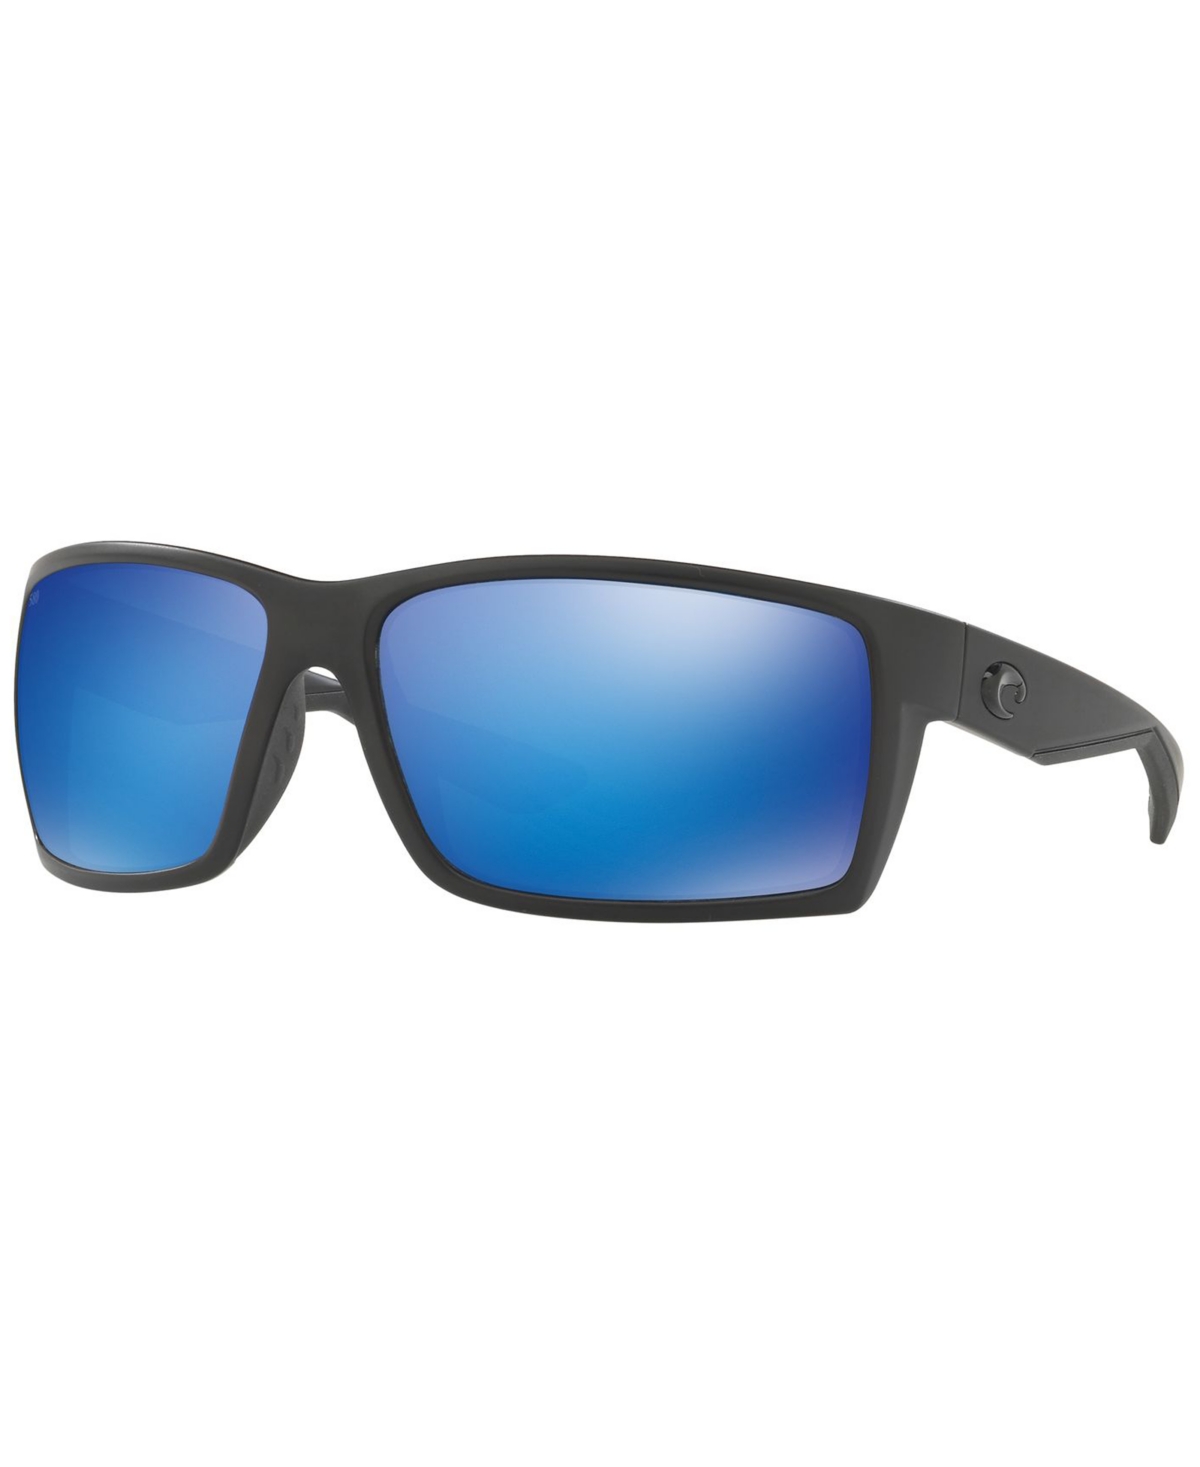 Polarized Sunglasses, Reefton 64 - TORTOISE MATTE/ GREEN MIRROR POLAR